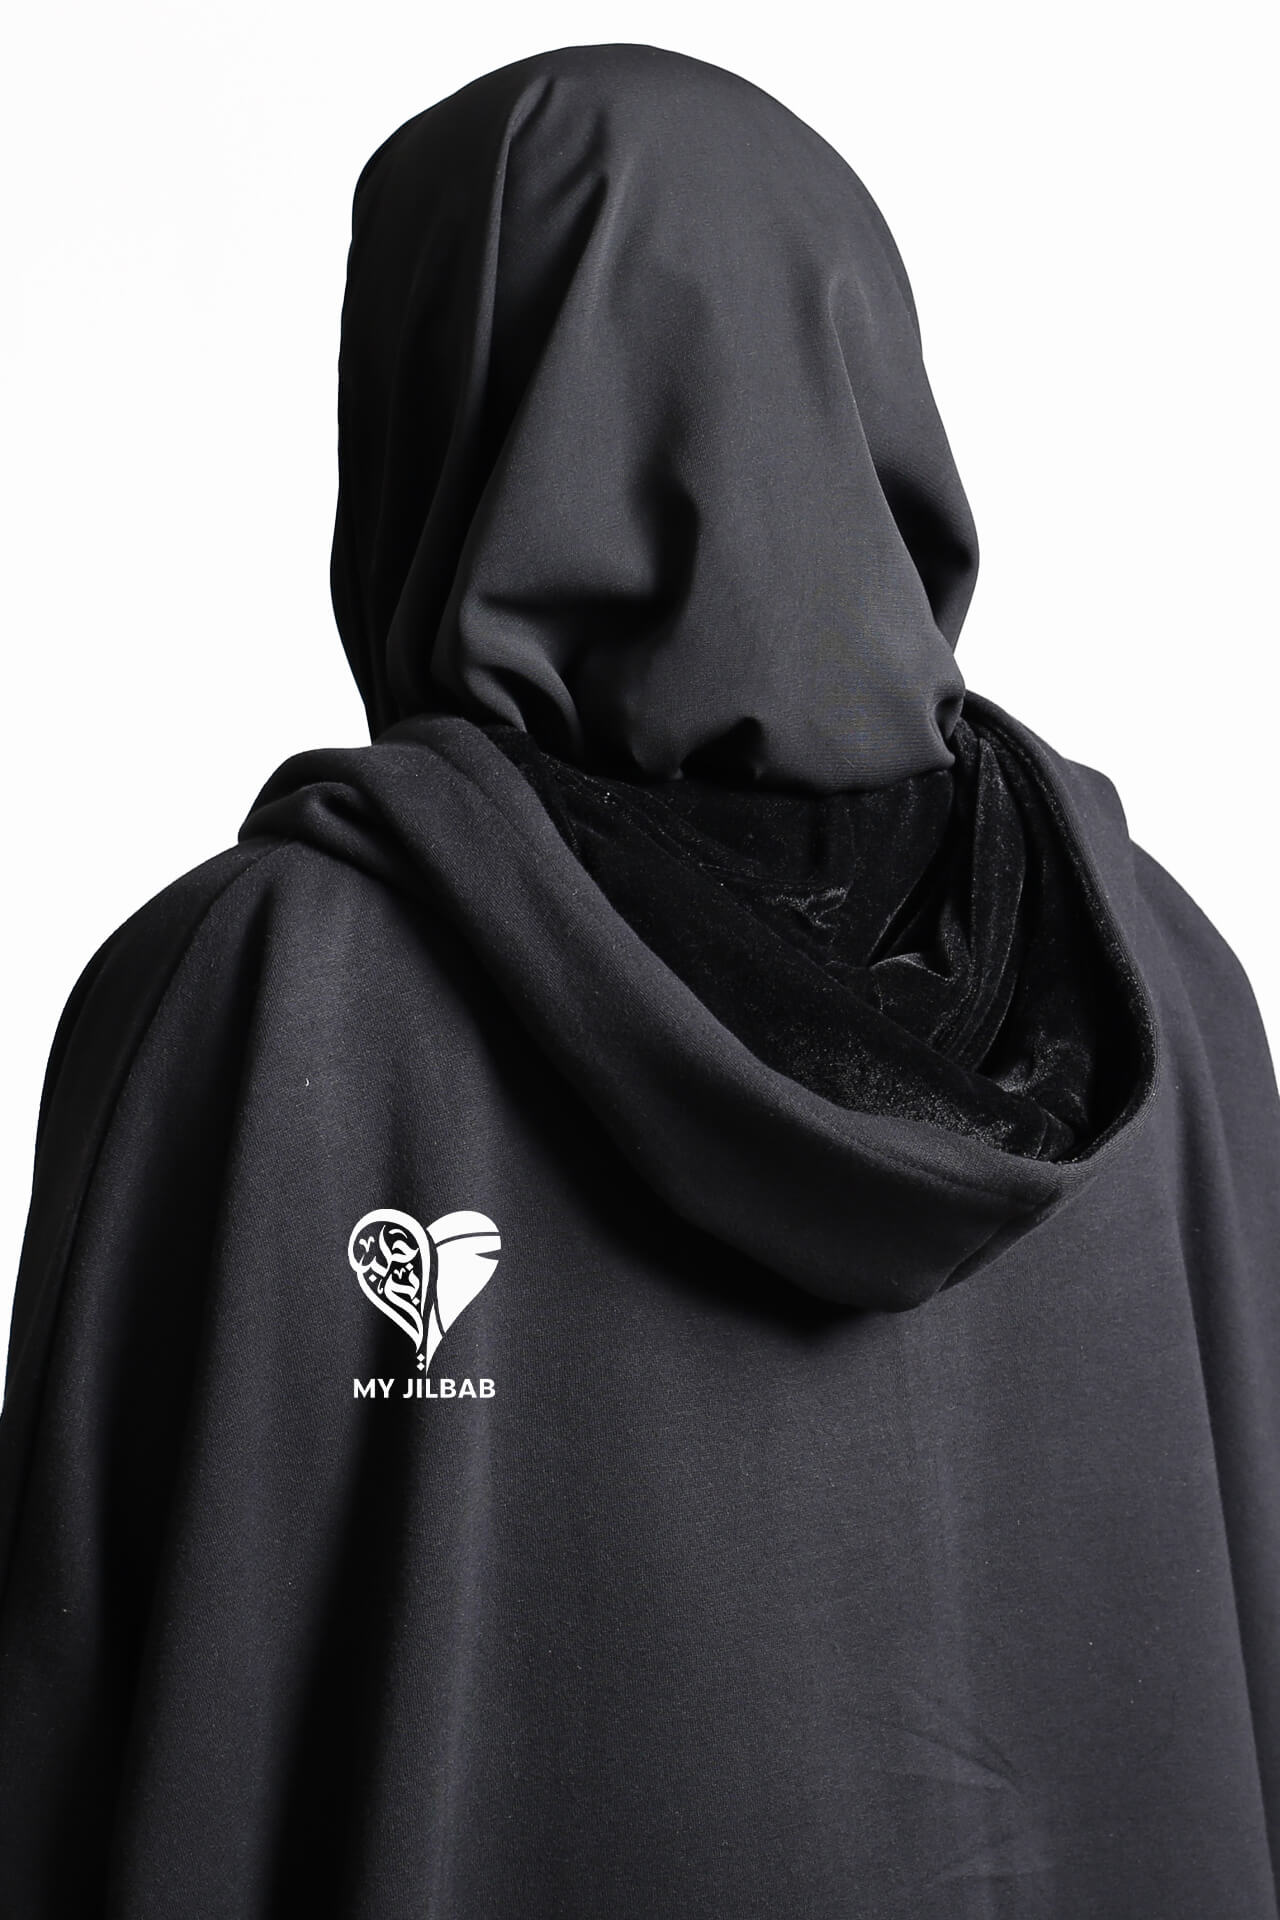 Velvet lined hooded jilbab